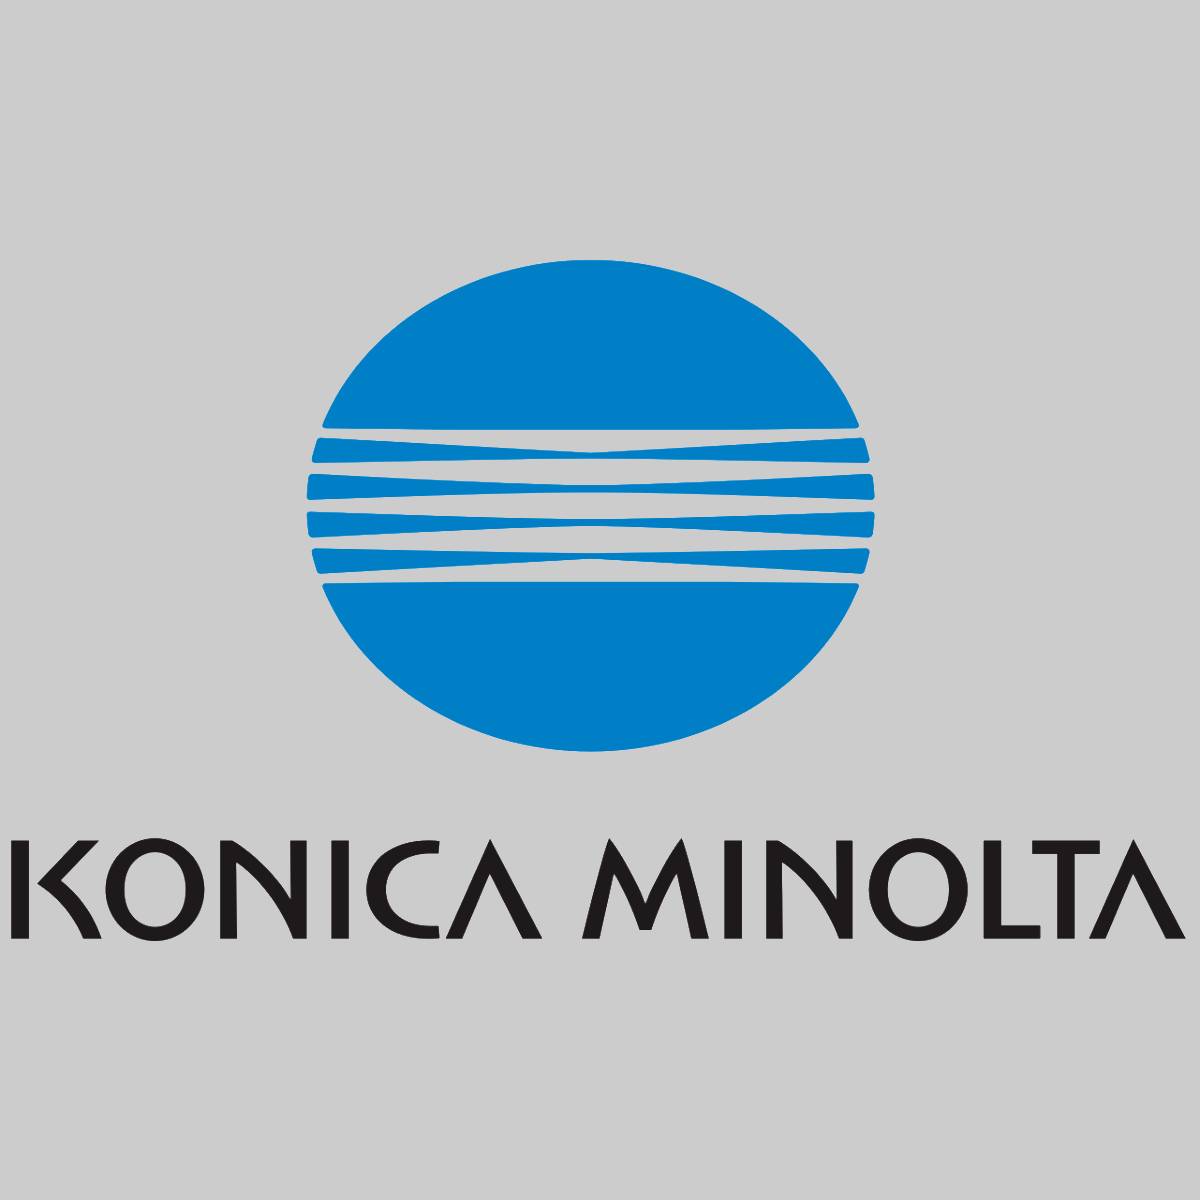 "Genuine Konica Minolta TN014 Black Toner A3VV150 for Bizhub 1052 1200 1250 225